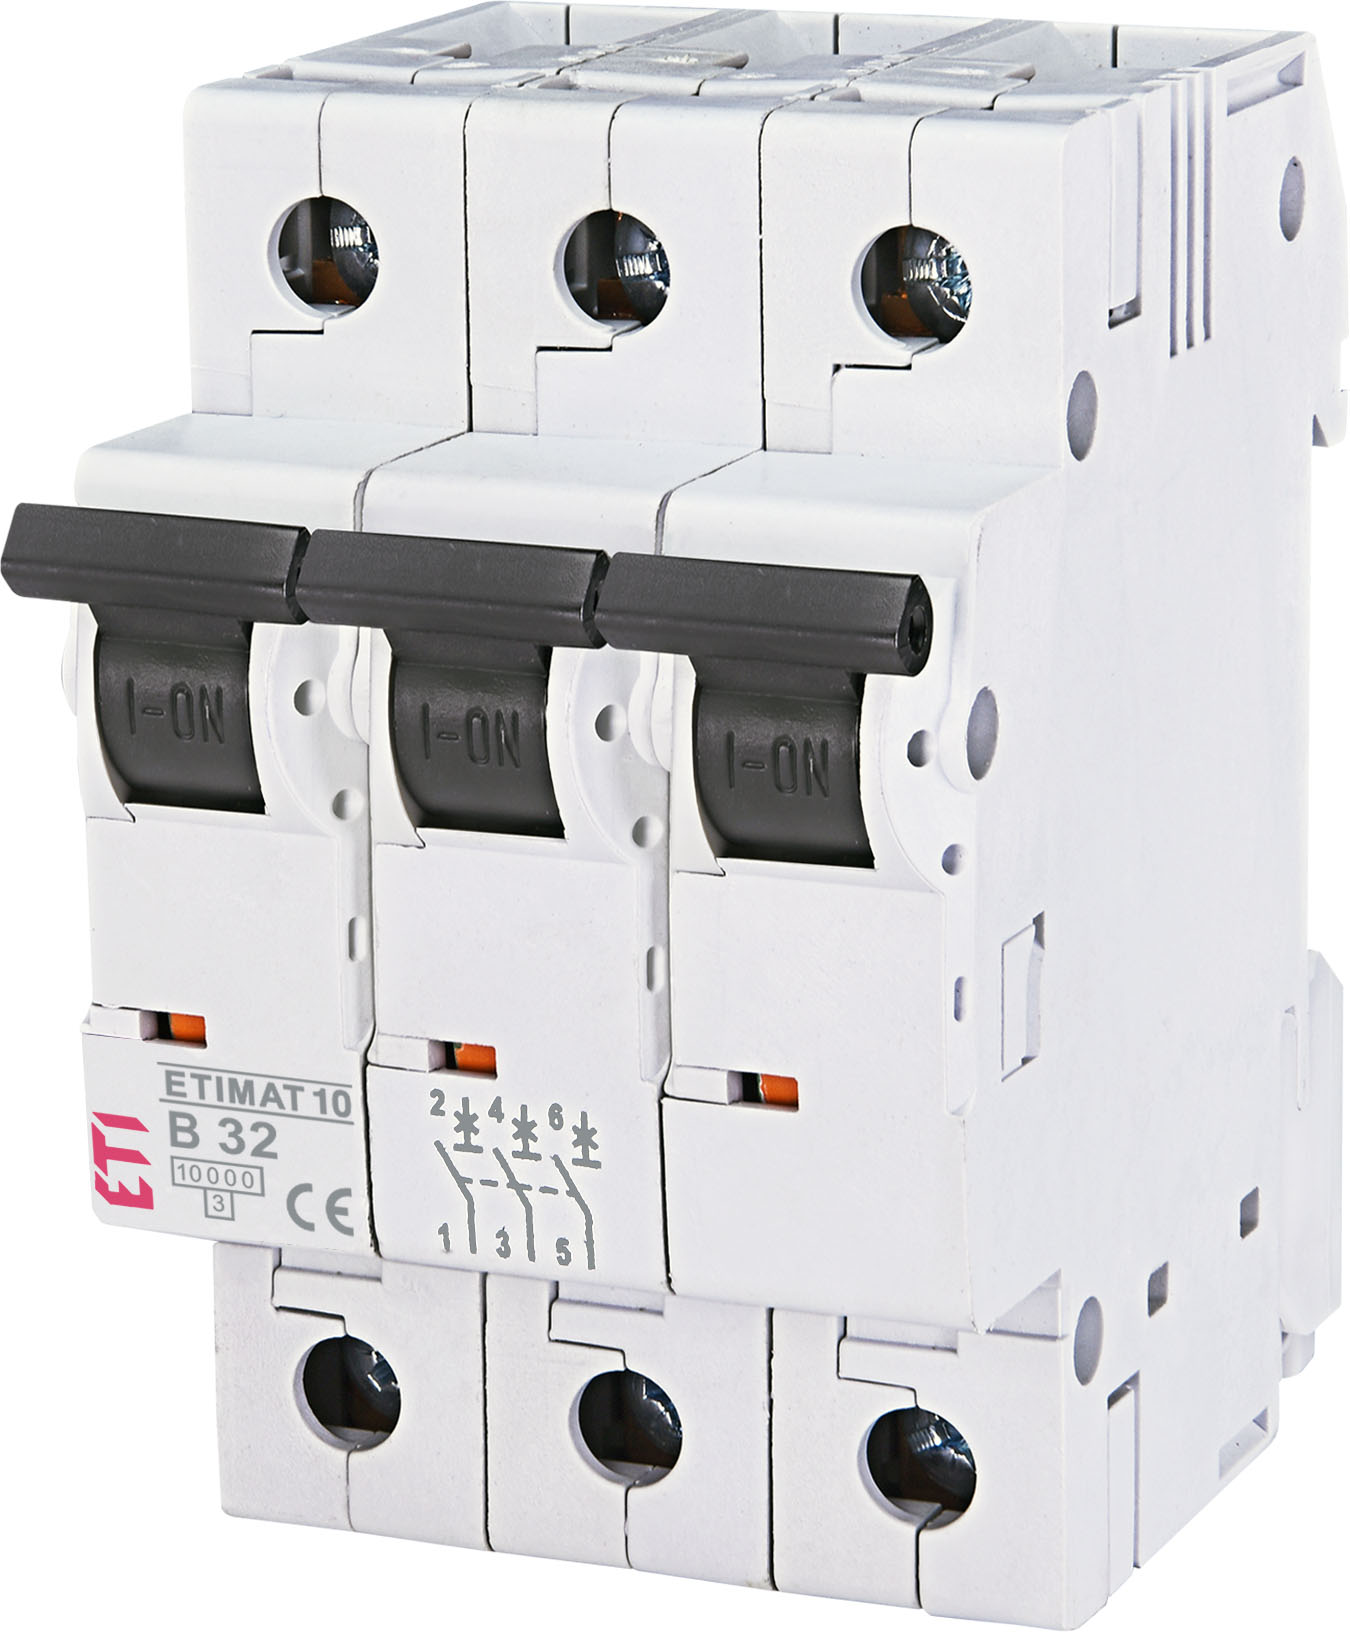 Автоматический выключатель ETI ETIMAT 10 3p B32 (002125719) в интернет-магазине, главное фото